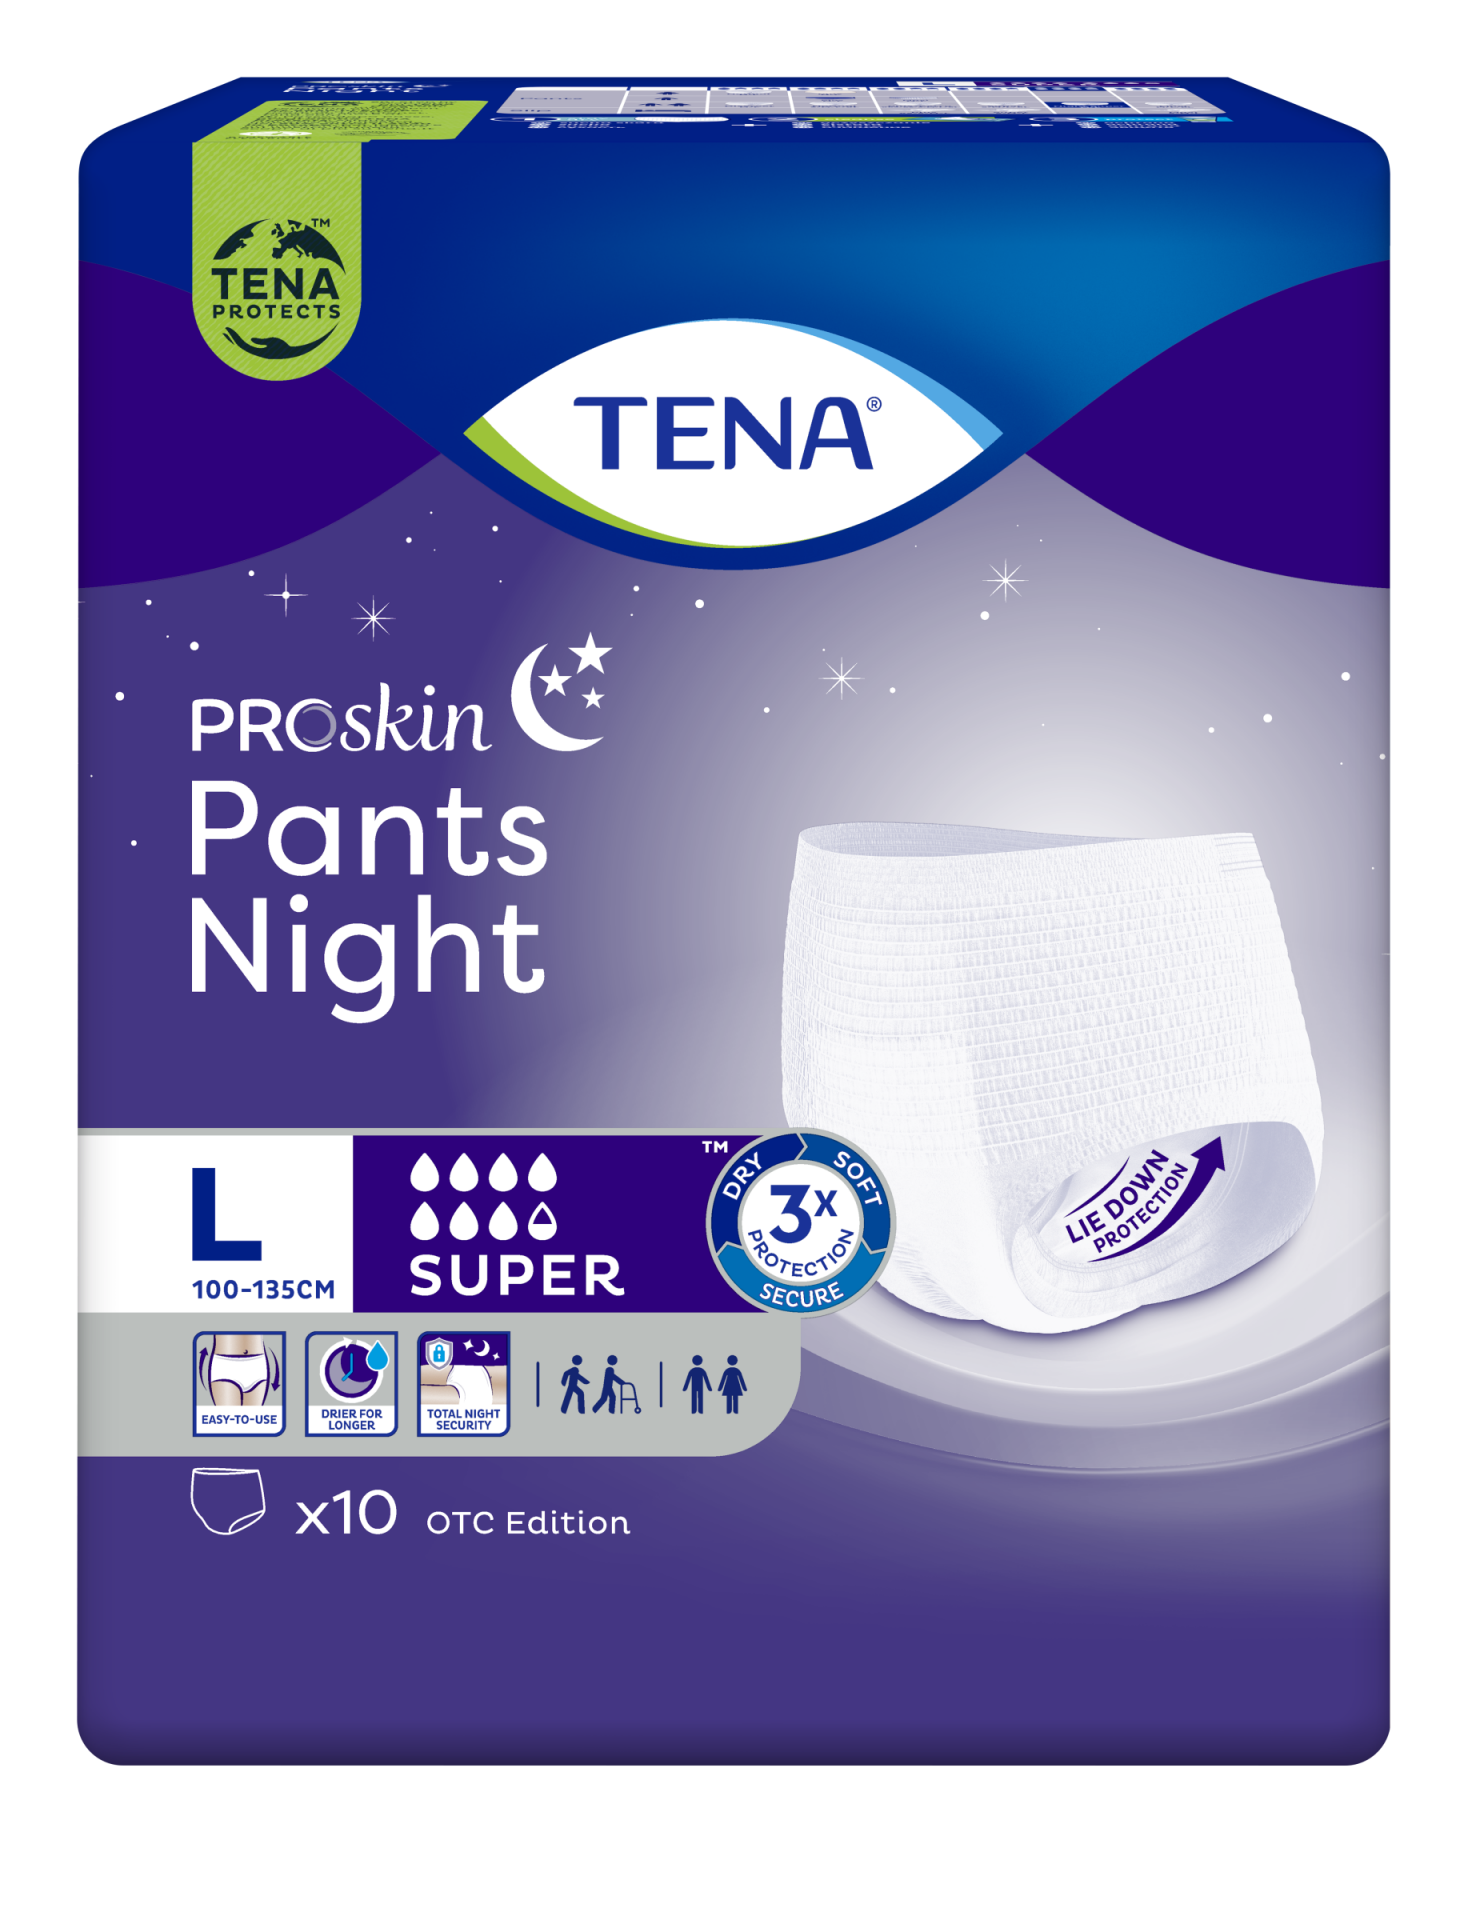 Tena ProSkin Pants Night Large Büyük Beden Gece için Süper Emici Külot 10 lu paket